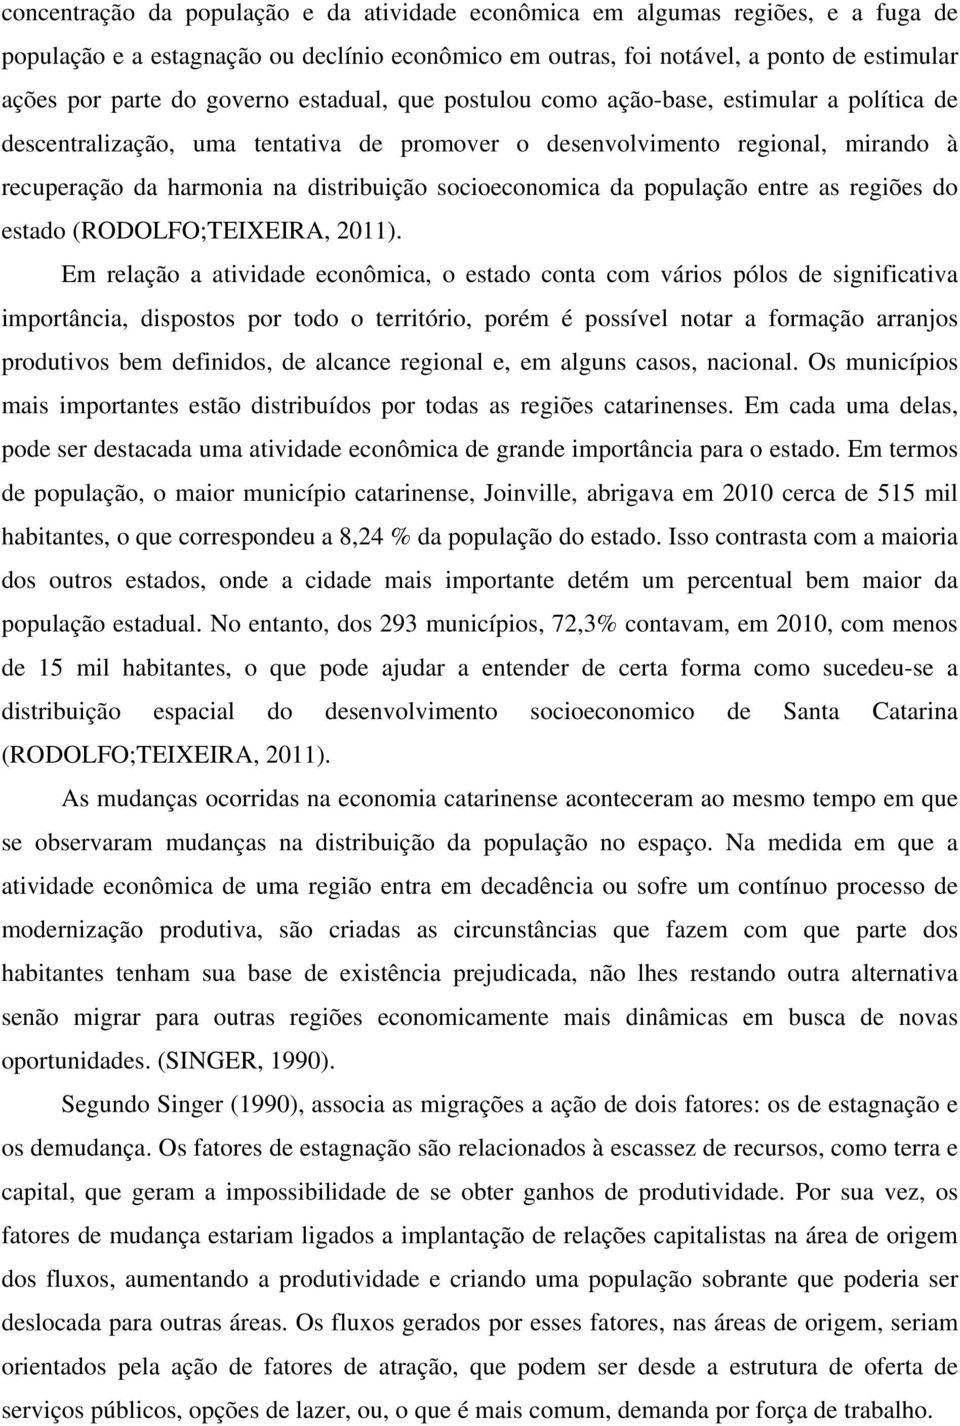 socioeconomica da população entre as regiões do estado (RODOLFO;TEIXEIRA, 2011).